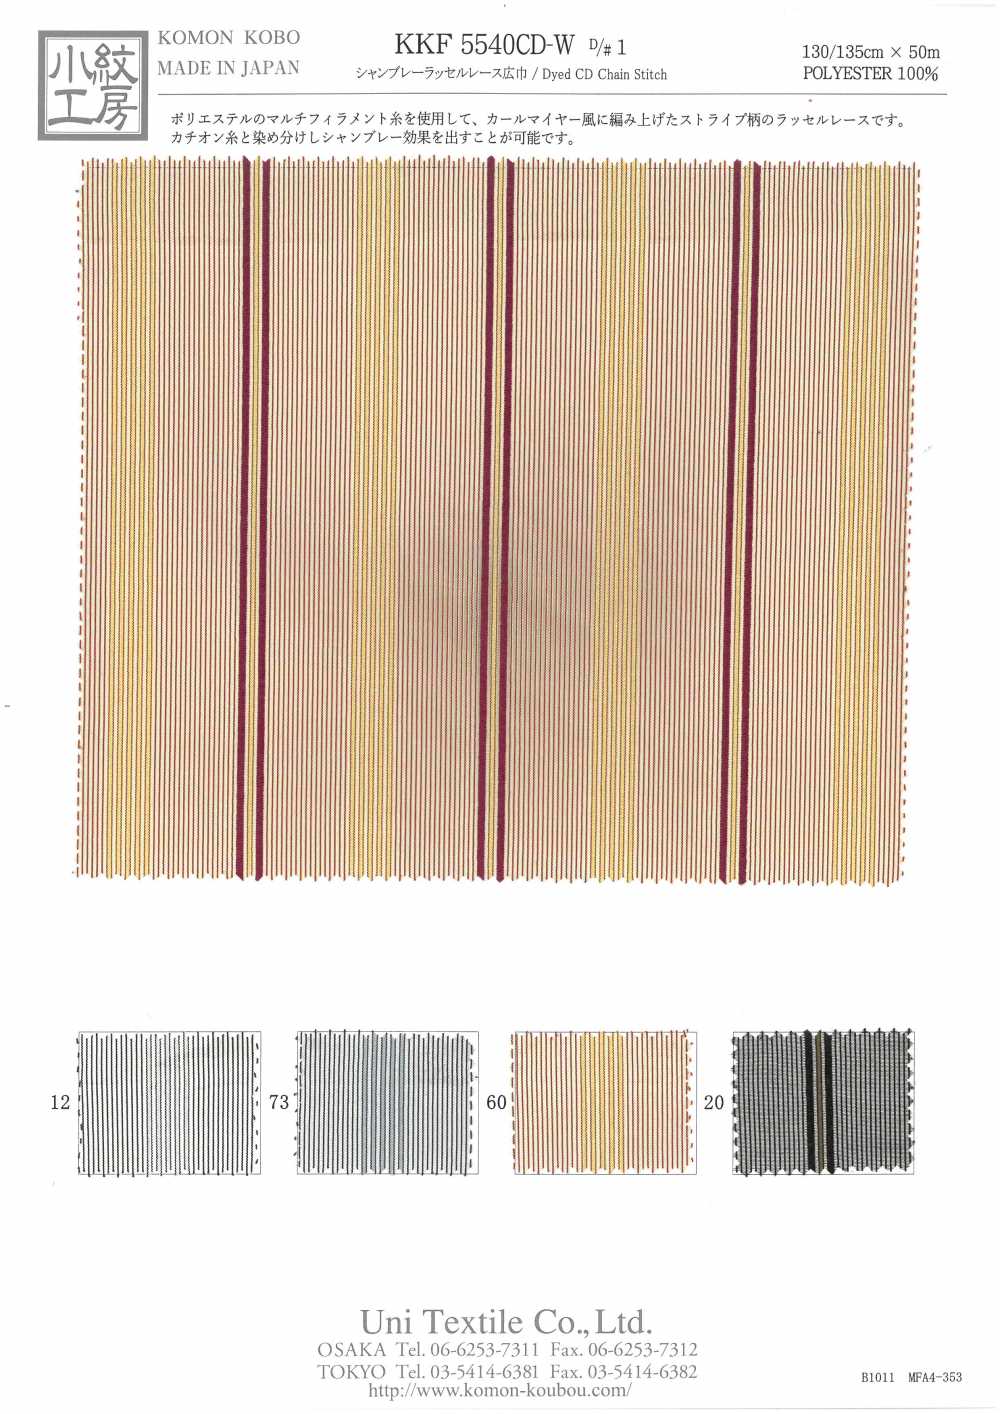 KKF5540CD-W-D/1 Pizzo Chambray Raschel Ampia Larghezza[Tessile / Tessuto] Uni Textile